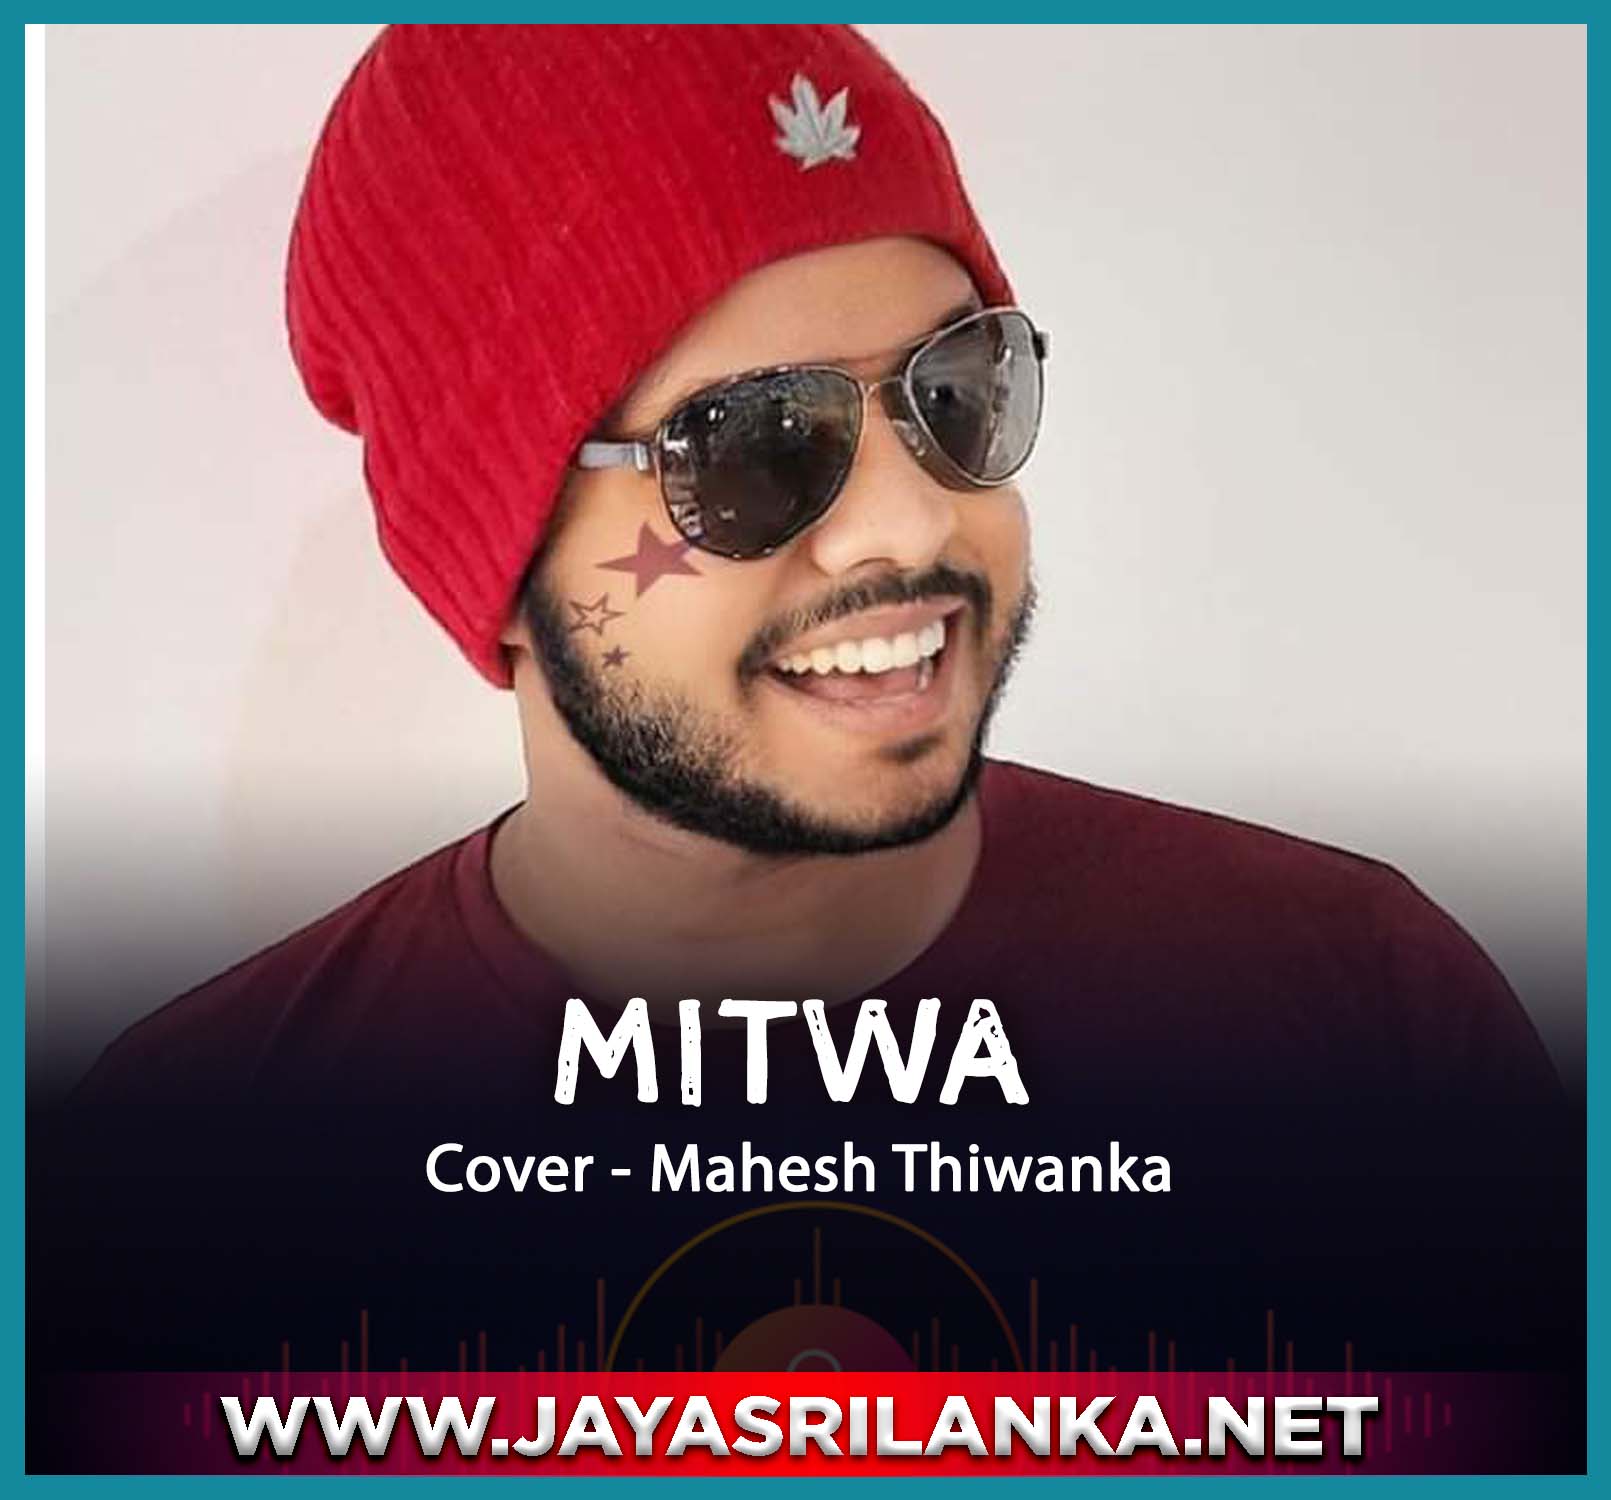 Mitwa Cover